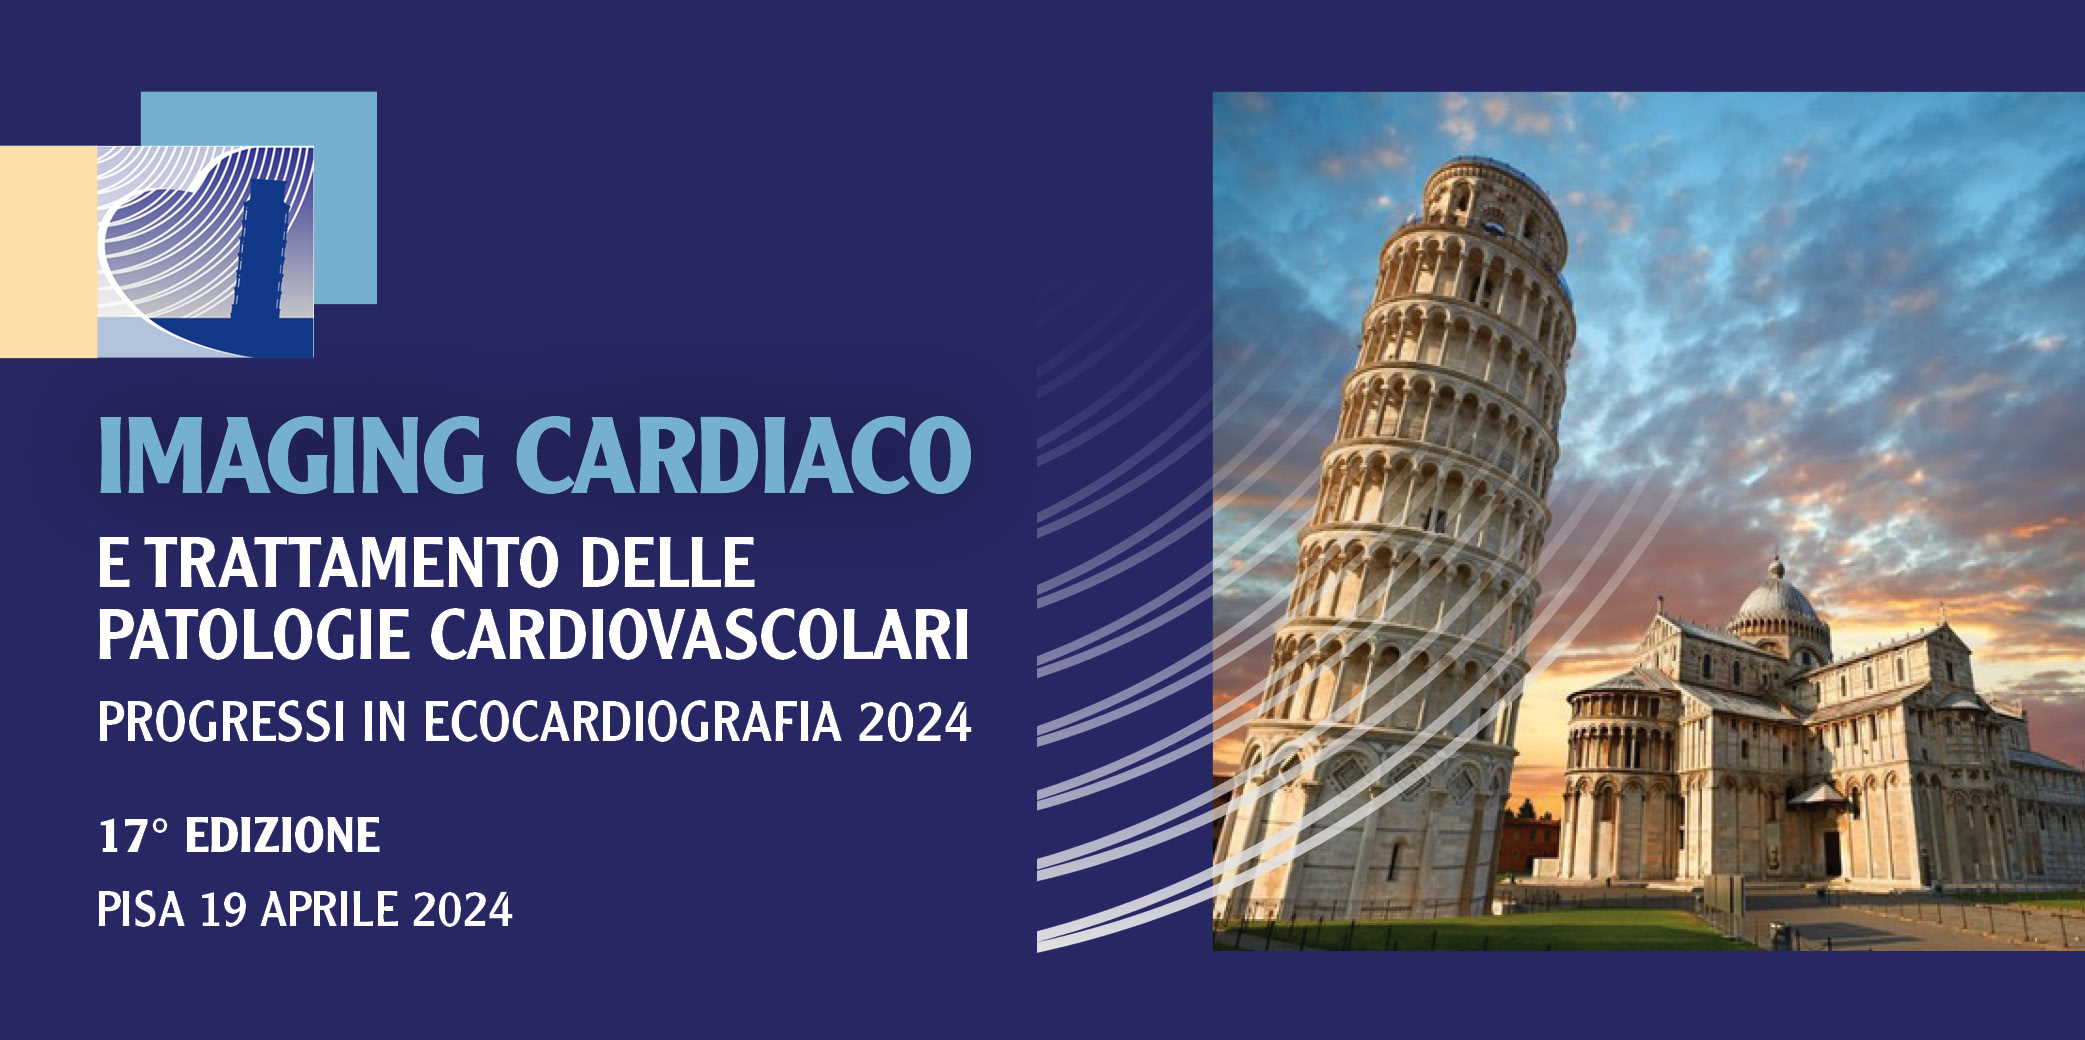 IMAGING CARDIACO E TRATTAMENTO DELLE PATOLOGIE CARDIOVASCOLARI – PISA, 19 APRILE 2024